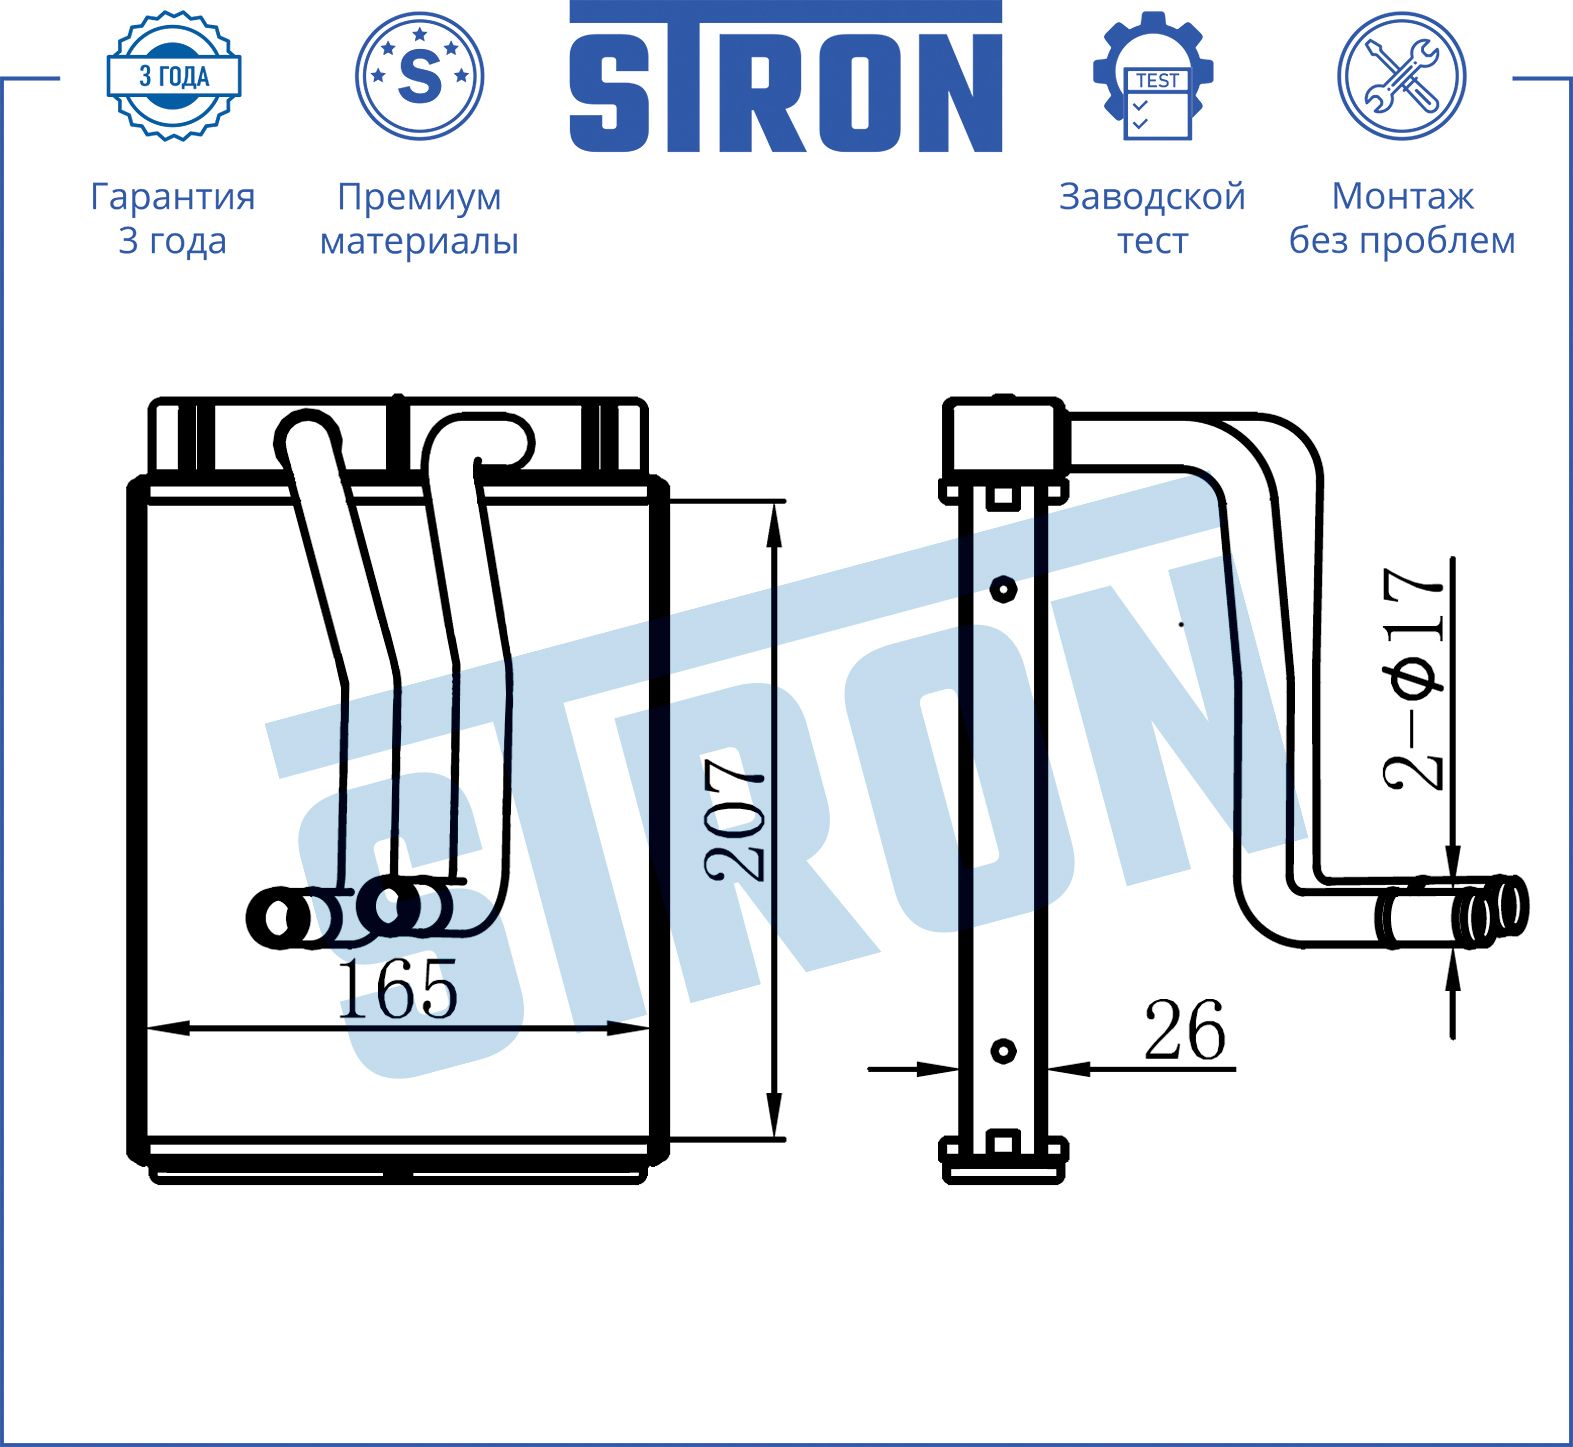 Радиатор печки STRON STH0019 (отопителя) Hyundai Grandeur III 2,5 бензин G6BV 161 МКПП/АКПП 1998-200 STH0019 Stron